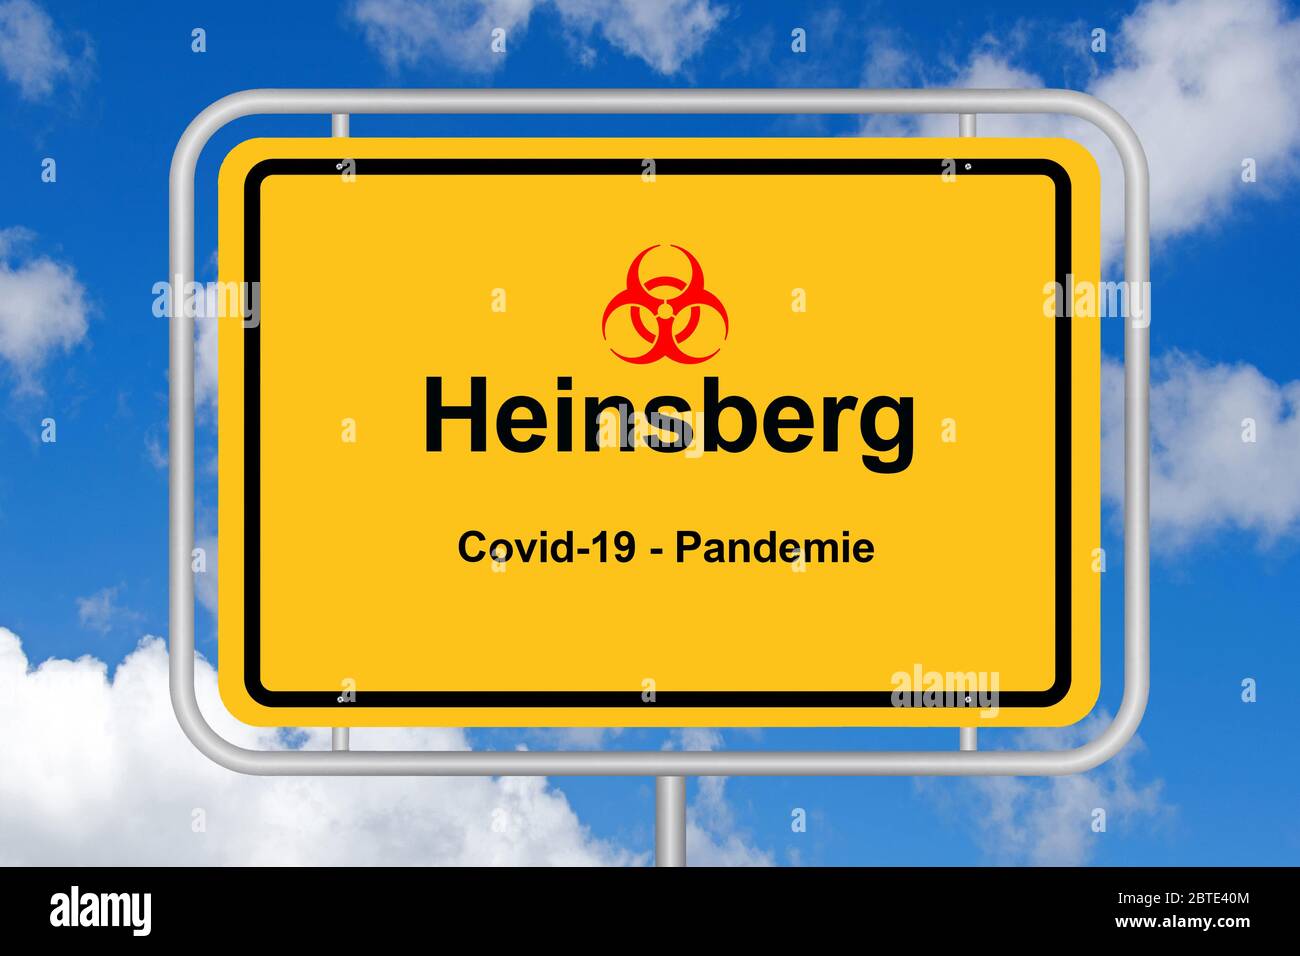 Ciudad de Heinsberg, COVID19, pandemia, Alemania Foto de stock